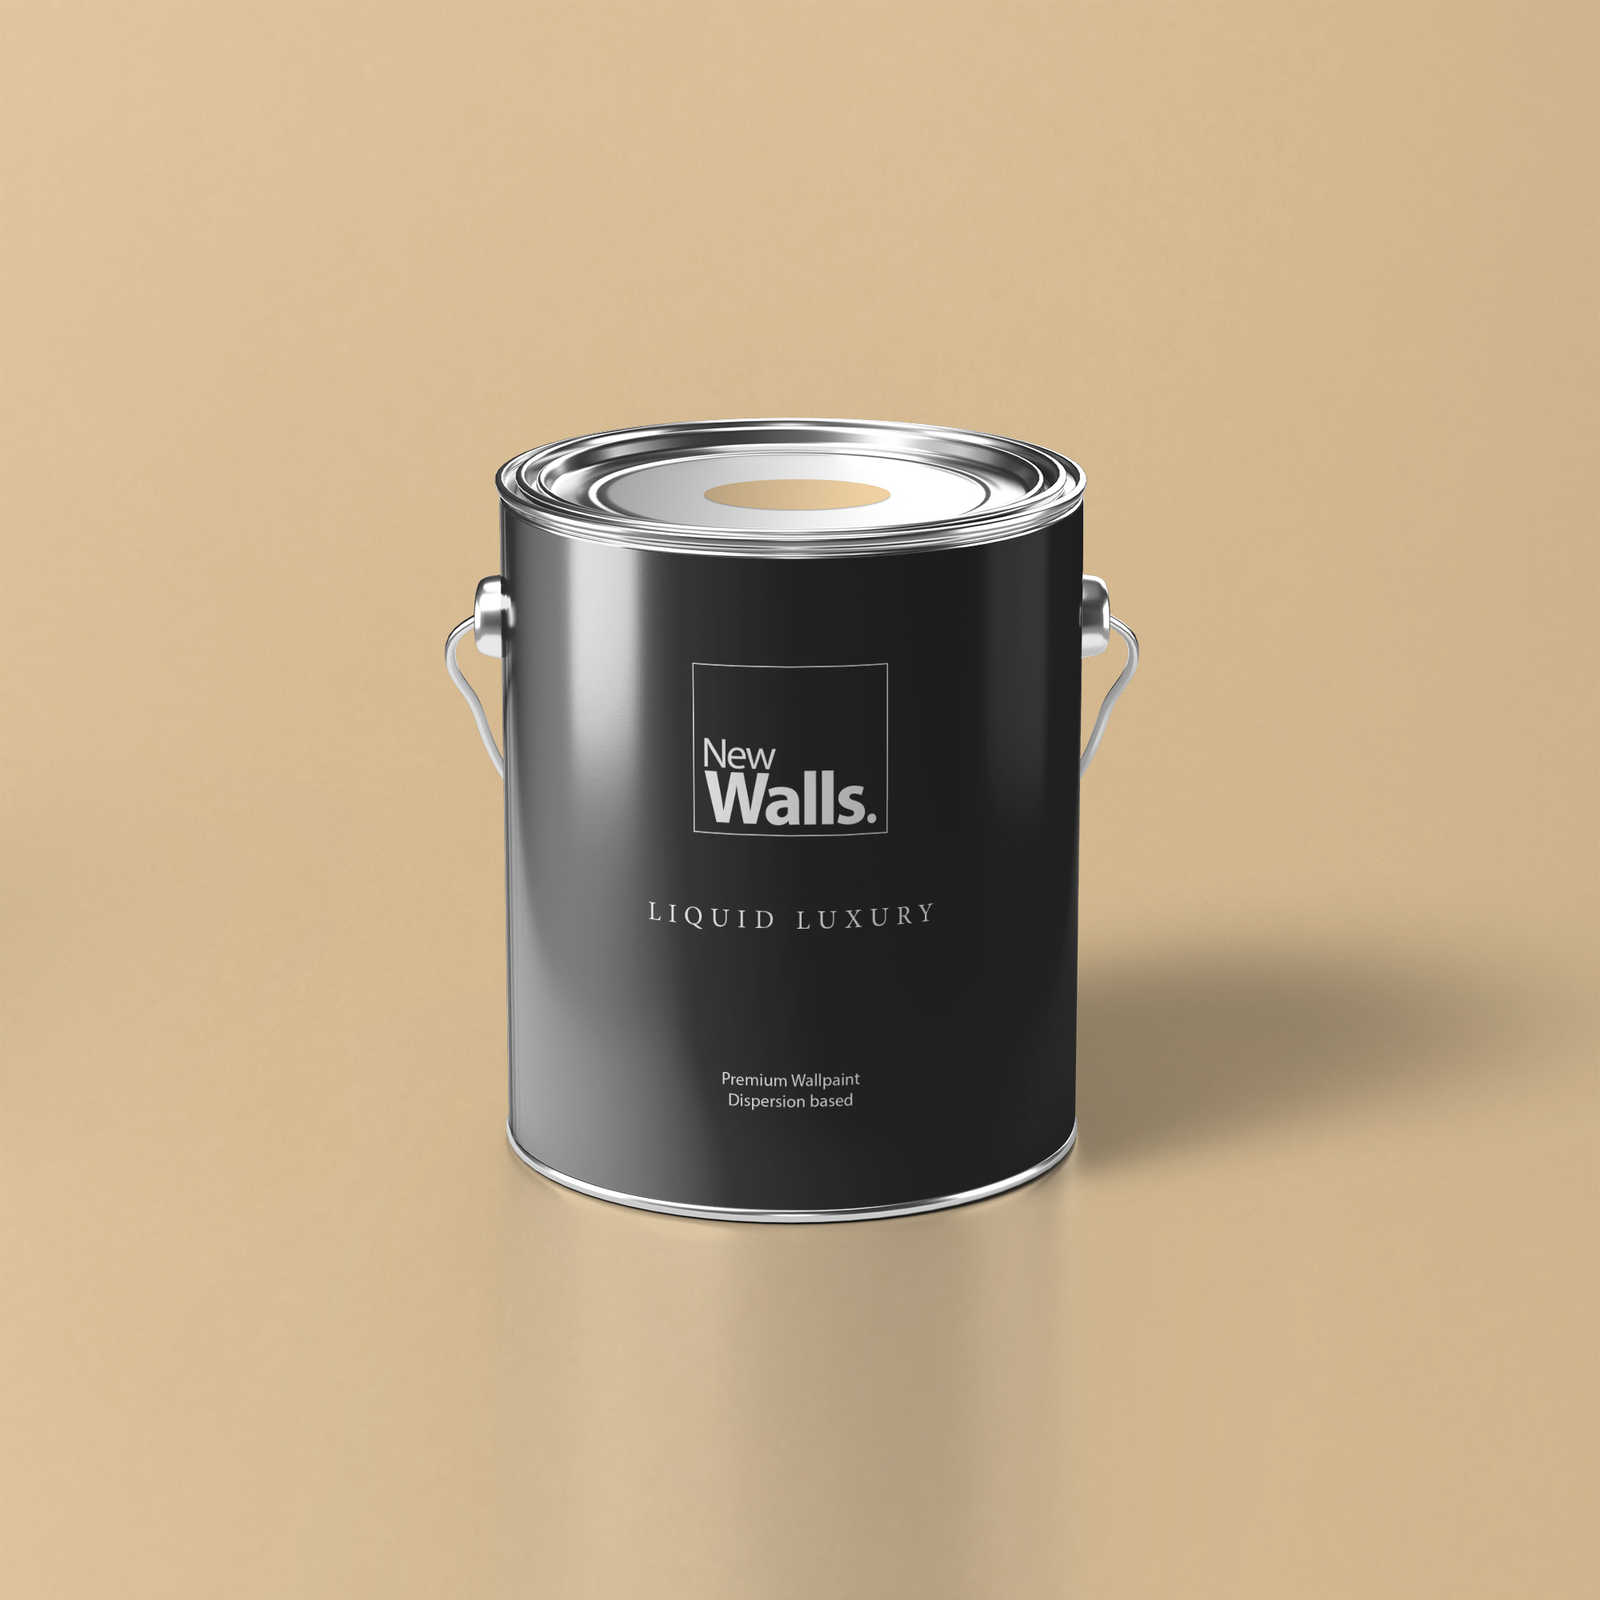 Premium Wall Paint Warm Light Beige »Beige Orange/Sassy Saffron« NW810 – 5 litre
